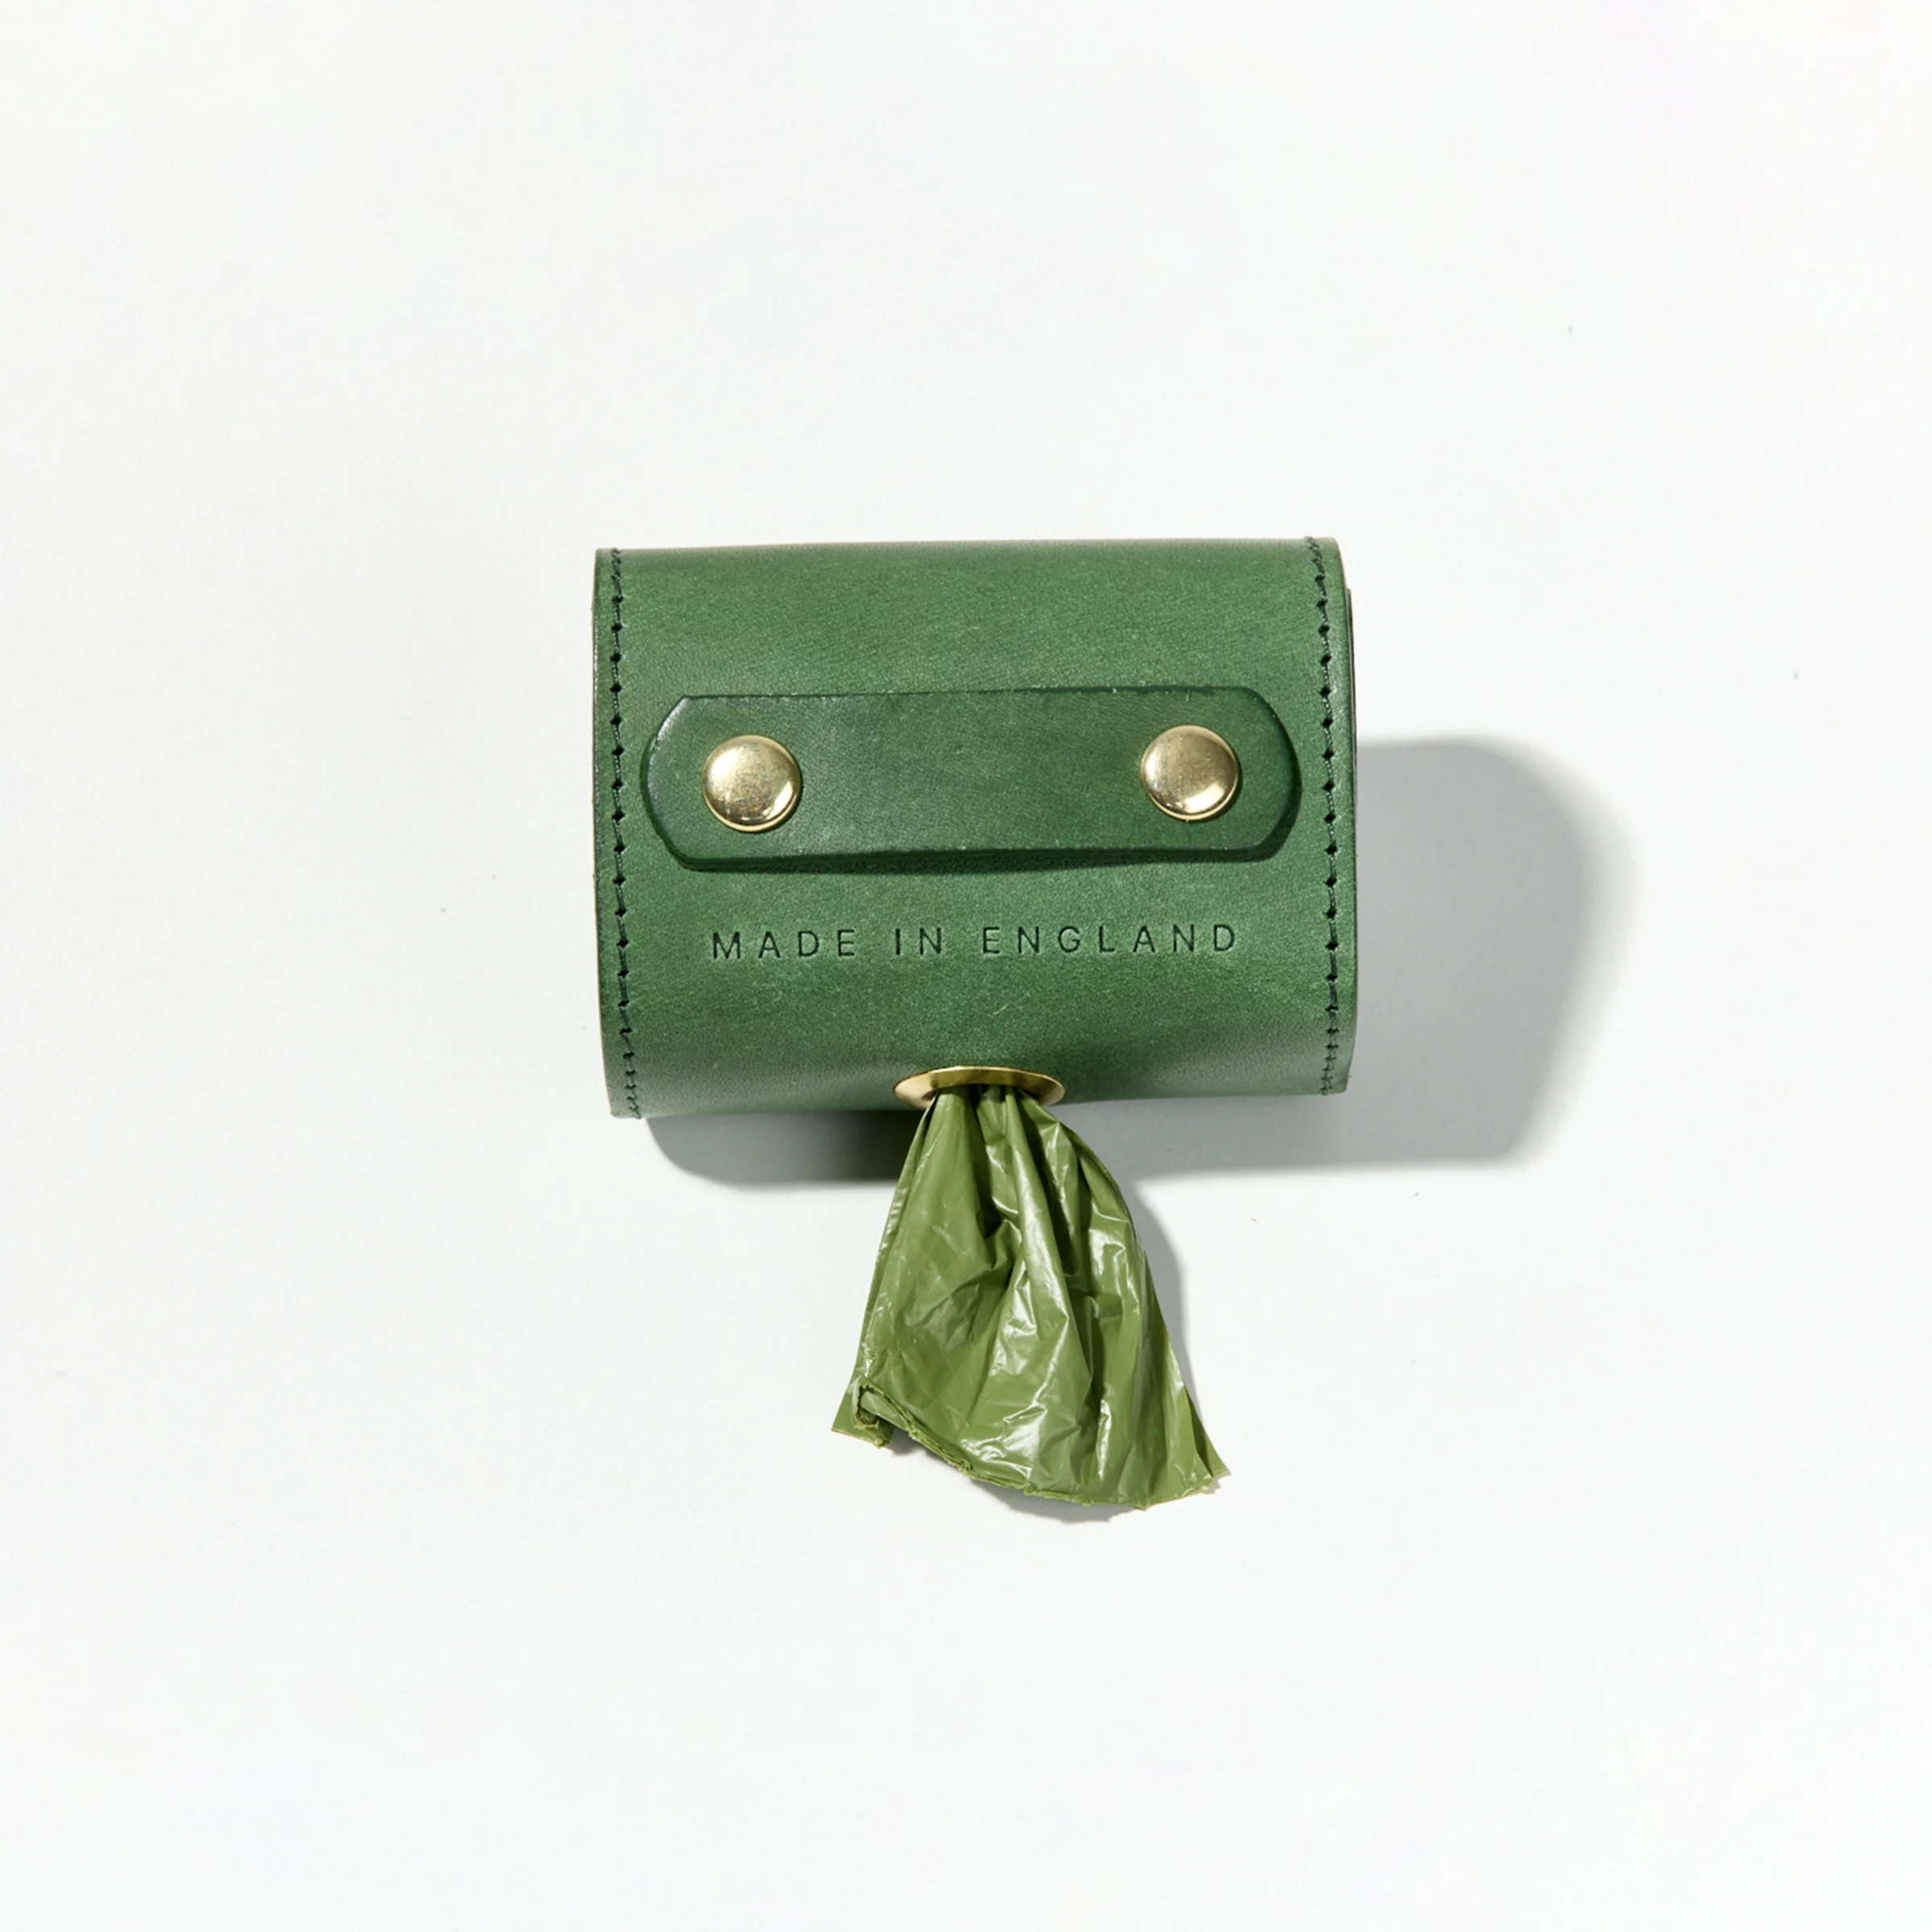 Leather Dog Poo Bag Holder (Green)